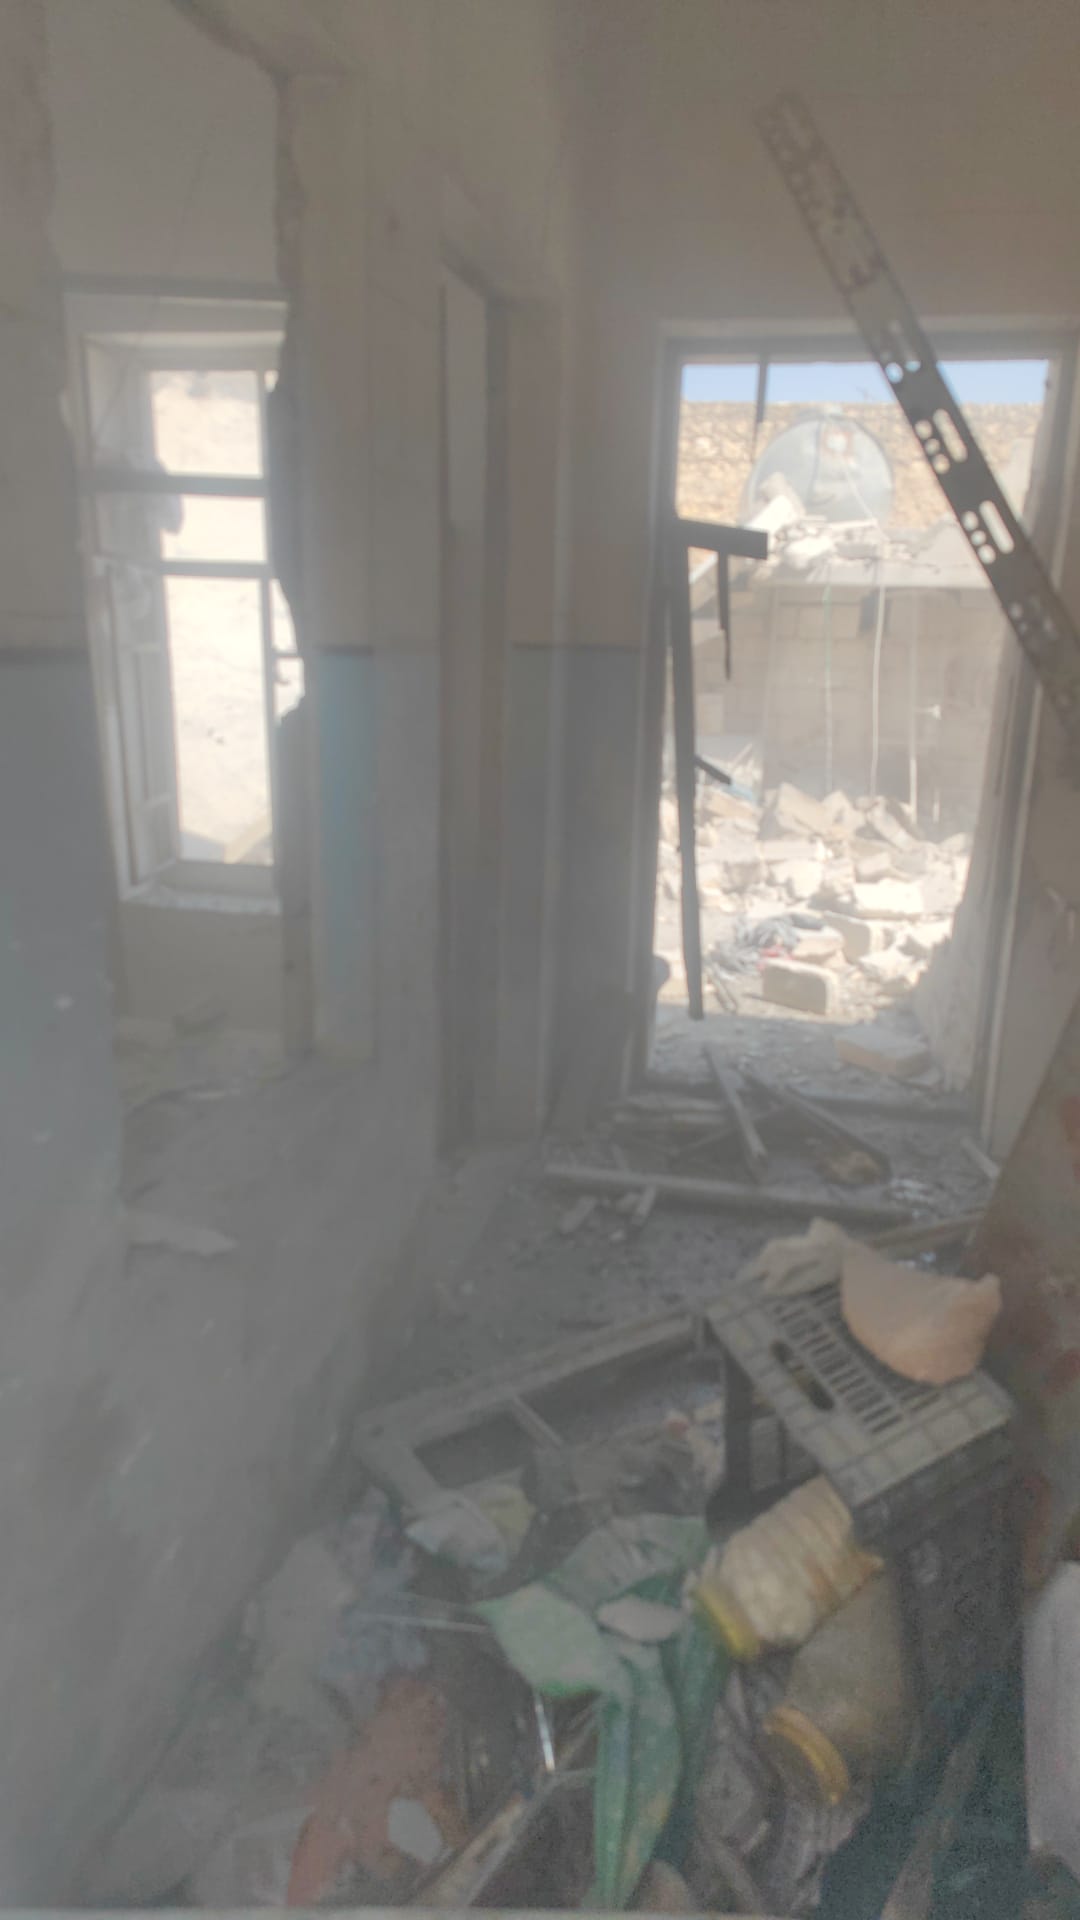  قتلى وجرحى بقصف صاروخي لقوات قسد استهدف وسط مدينة الباب شرق حلب السورية